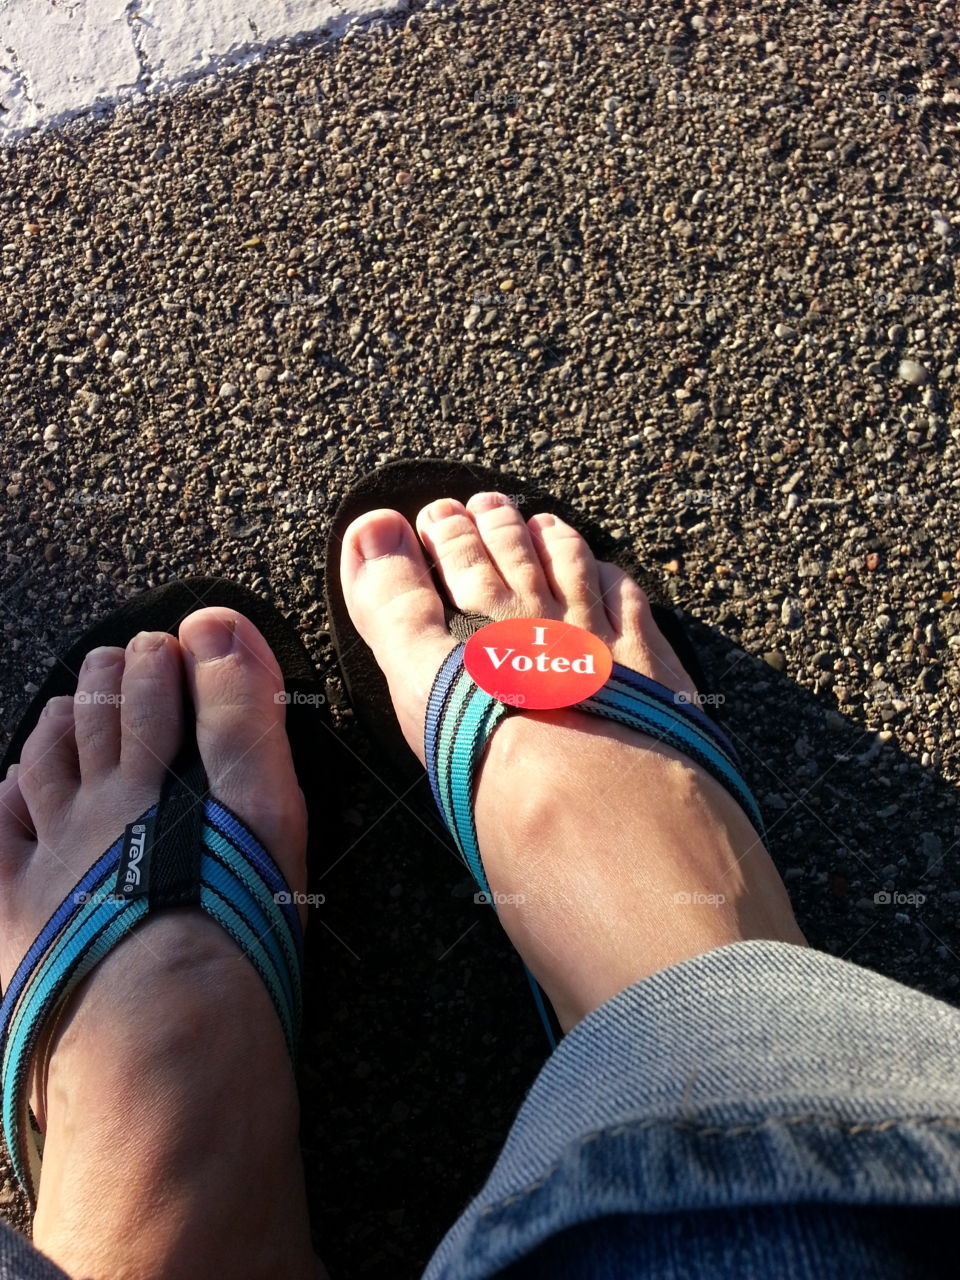 Voting in my flip flops